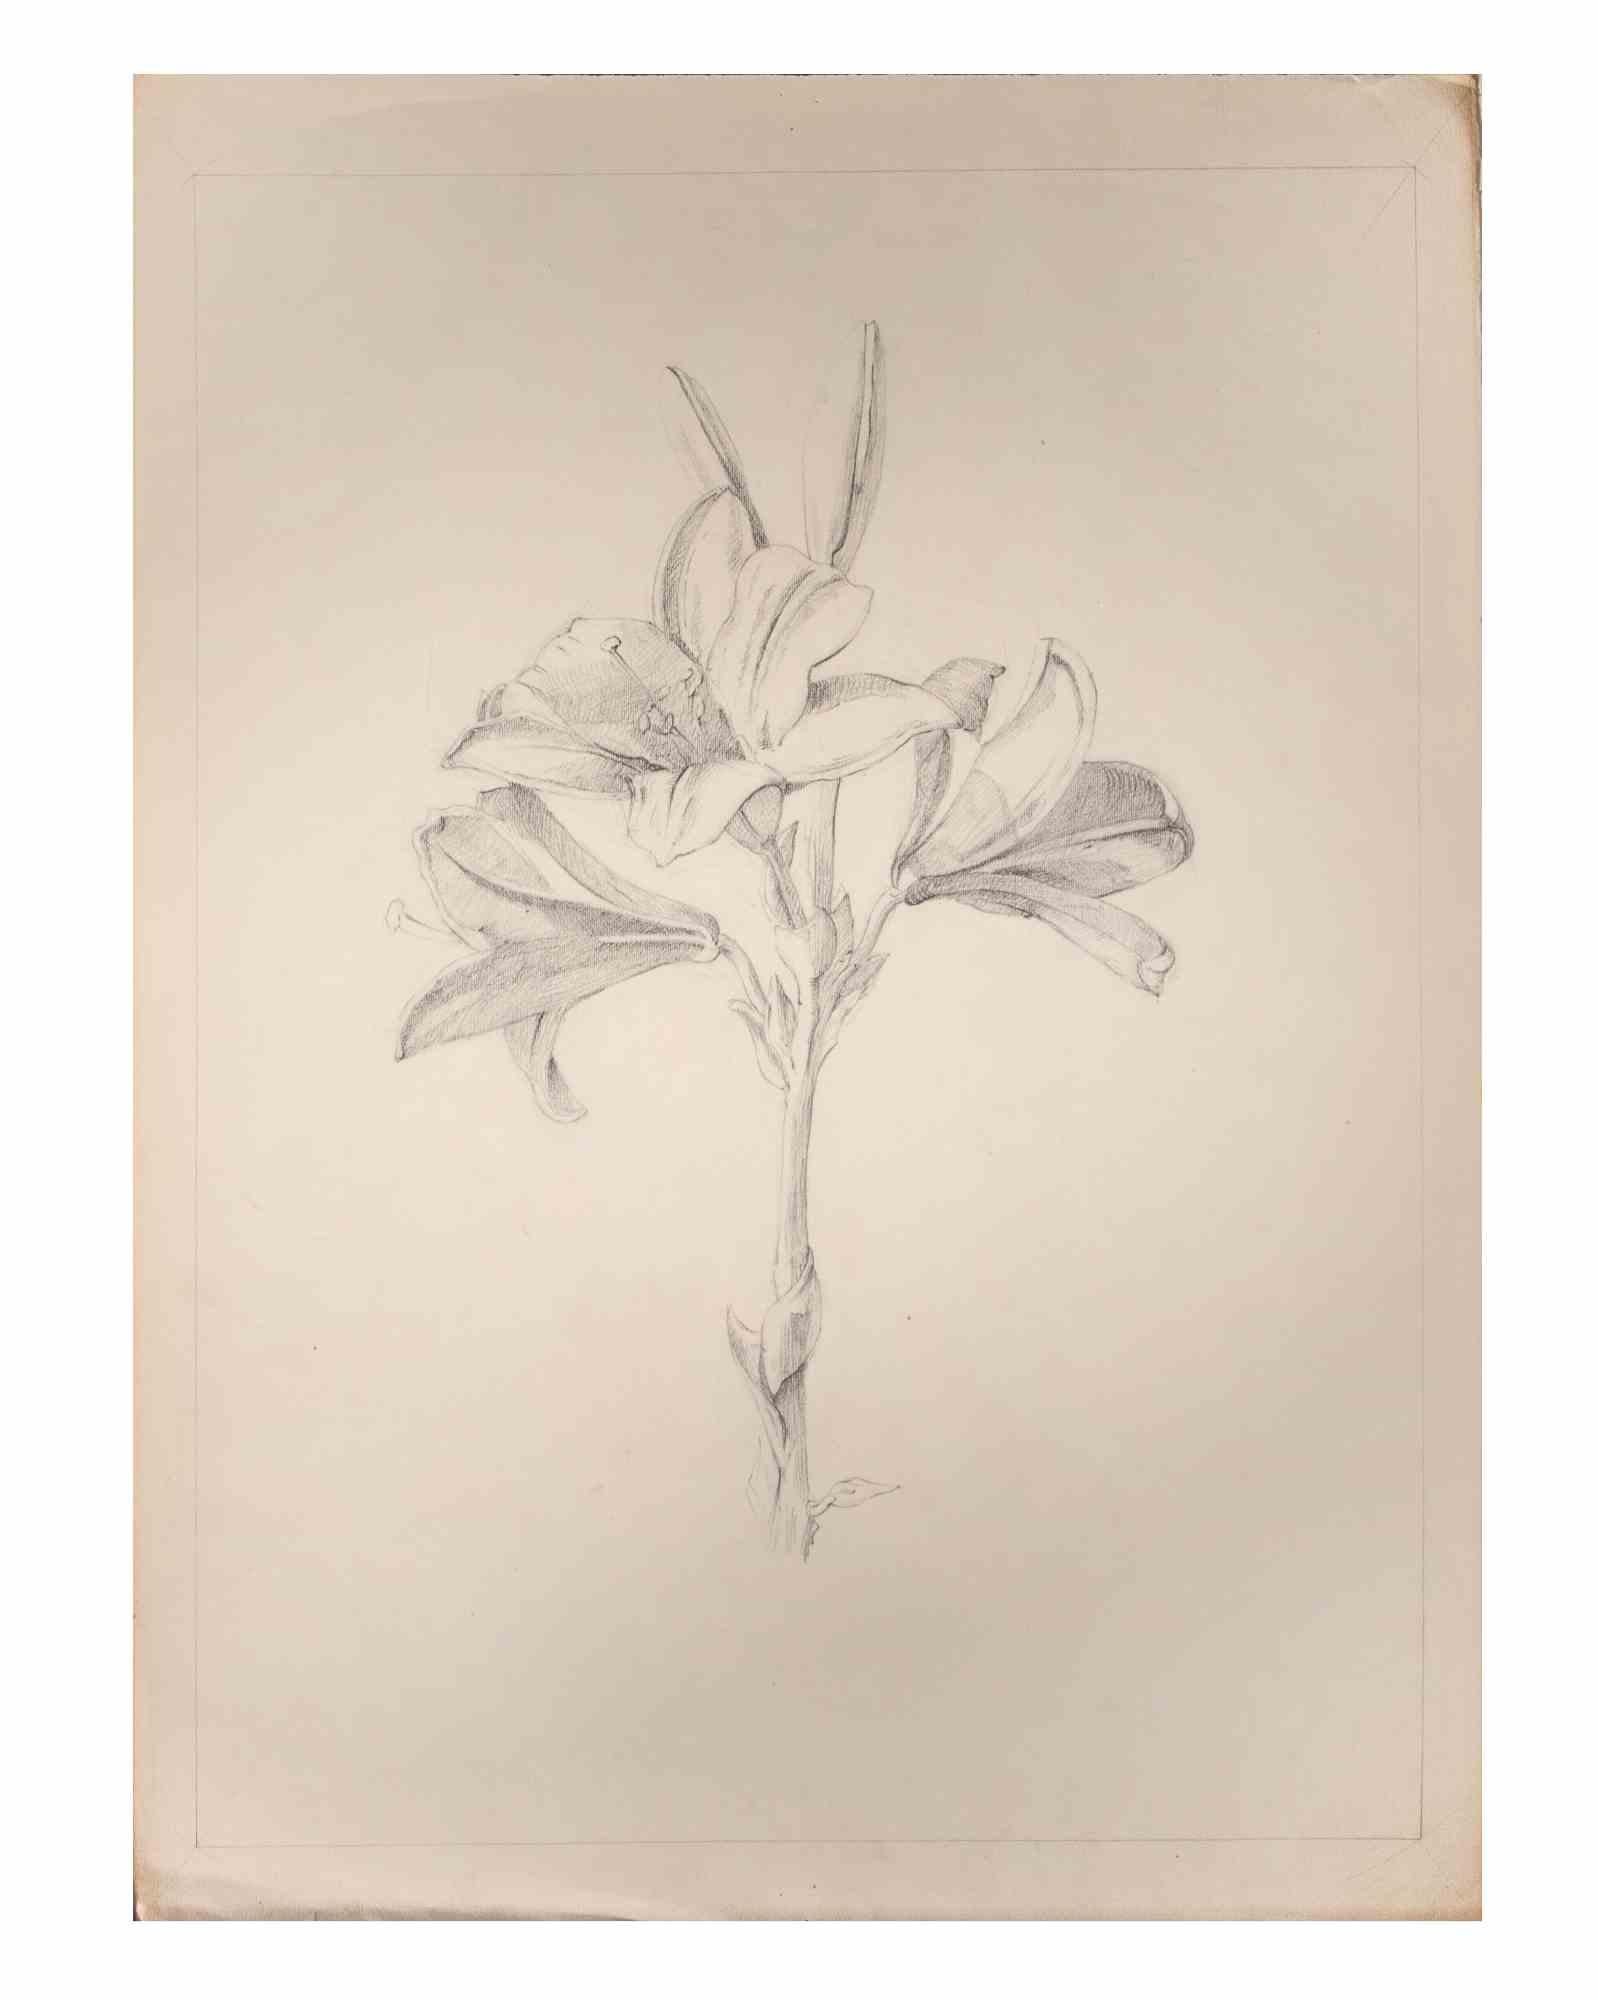 Lily ist ein Kunstwerk des italienischen Künstlers Aurelio Mistruzzi aus dem Jahr 1905.

Bleistift-Zeichnung auf Papier .

Gute Bedingungen.

Aurelio Mistruzzi (1880-1960) studierte an der Kunstschule von Udine und hatte Unterricht bei dem Bildhauer